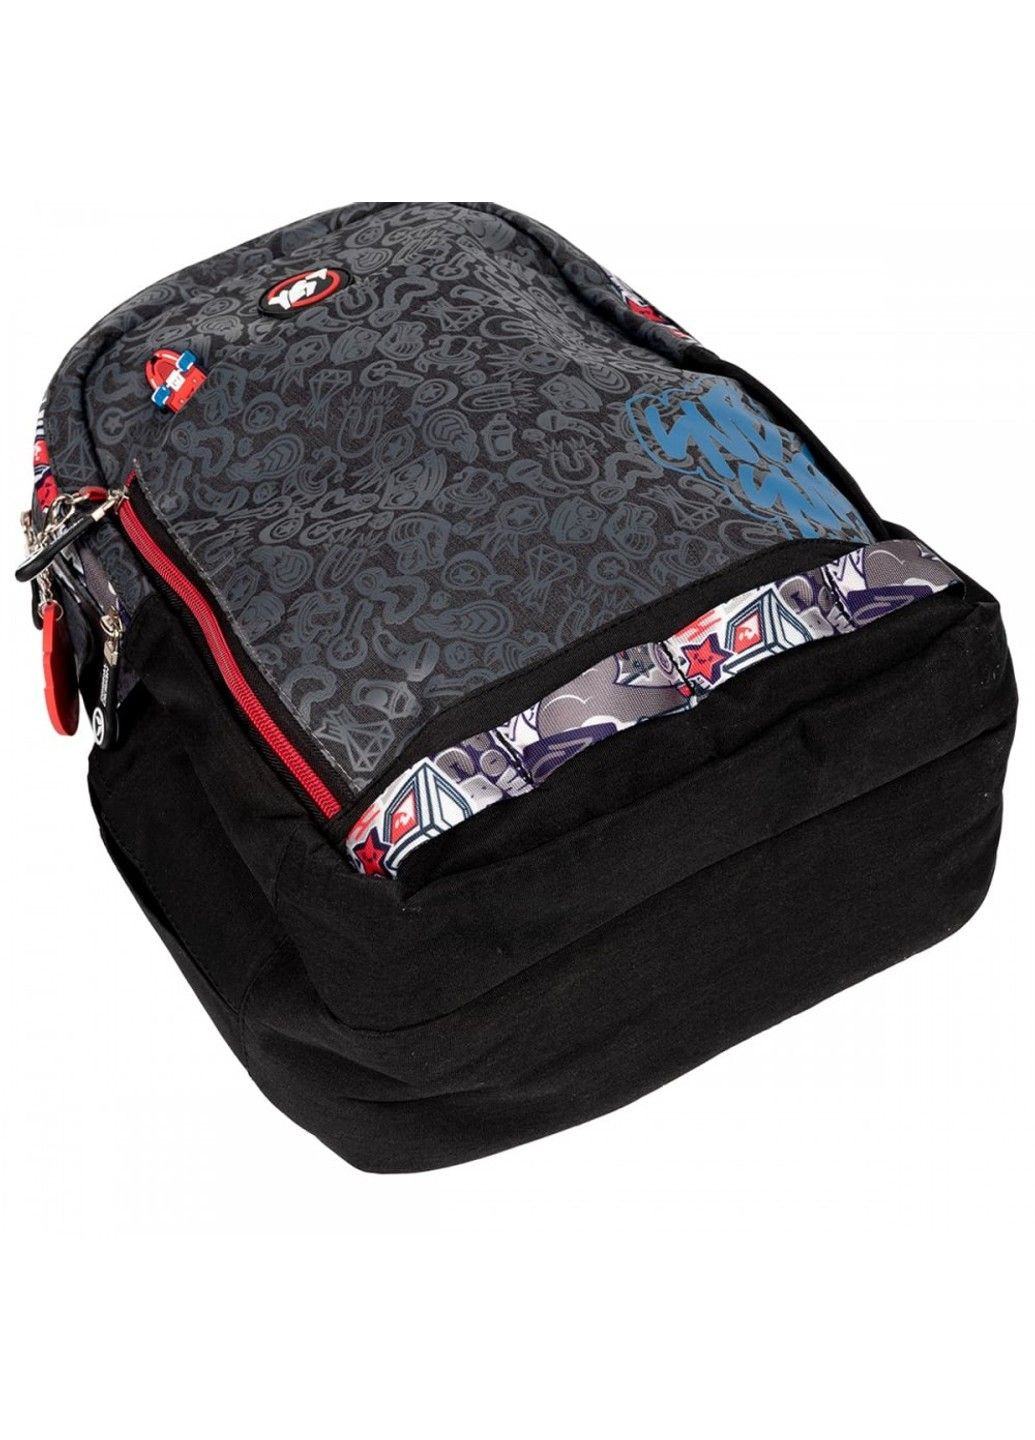 Шкільний рюкзак для молодших класів S-40 SubSurf Yes (278404445)